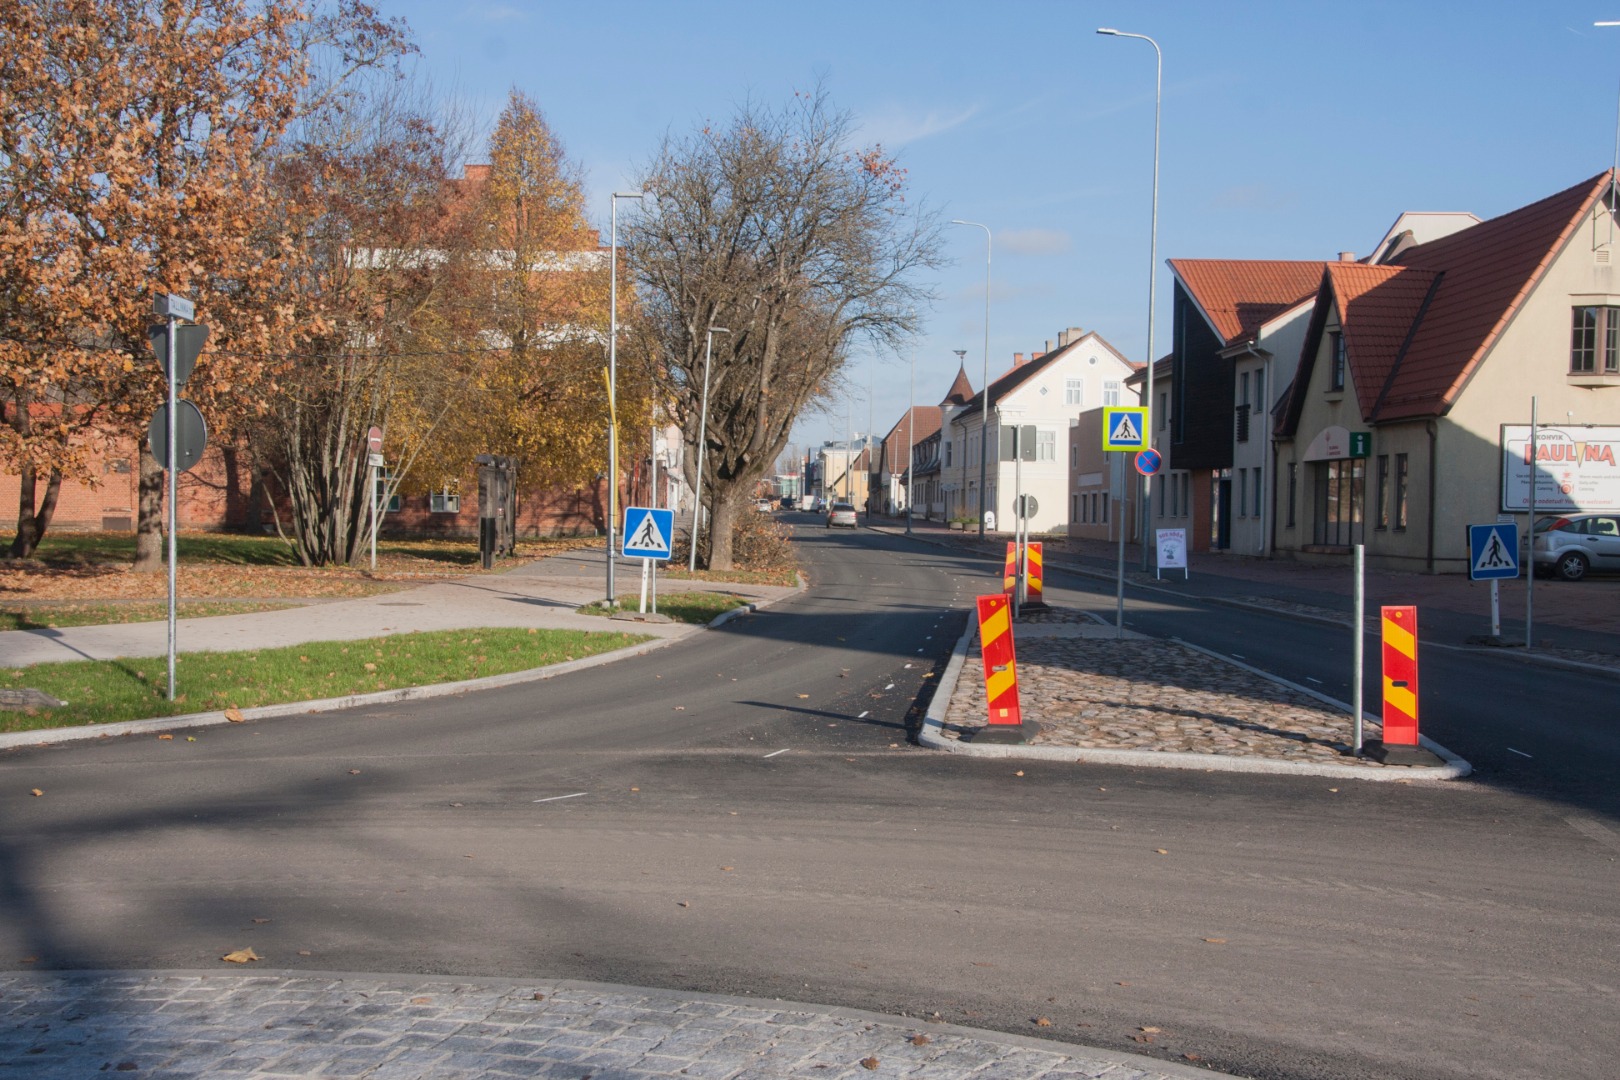 Taxi discretion in Viljandi on Tallinn Street. rephoto